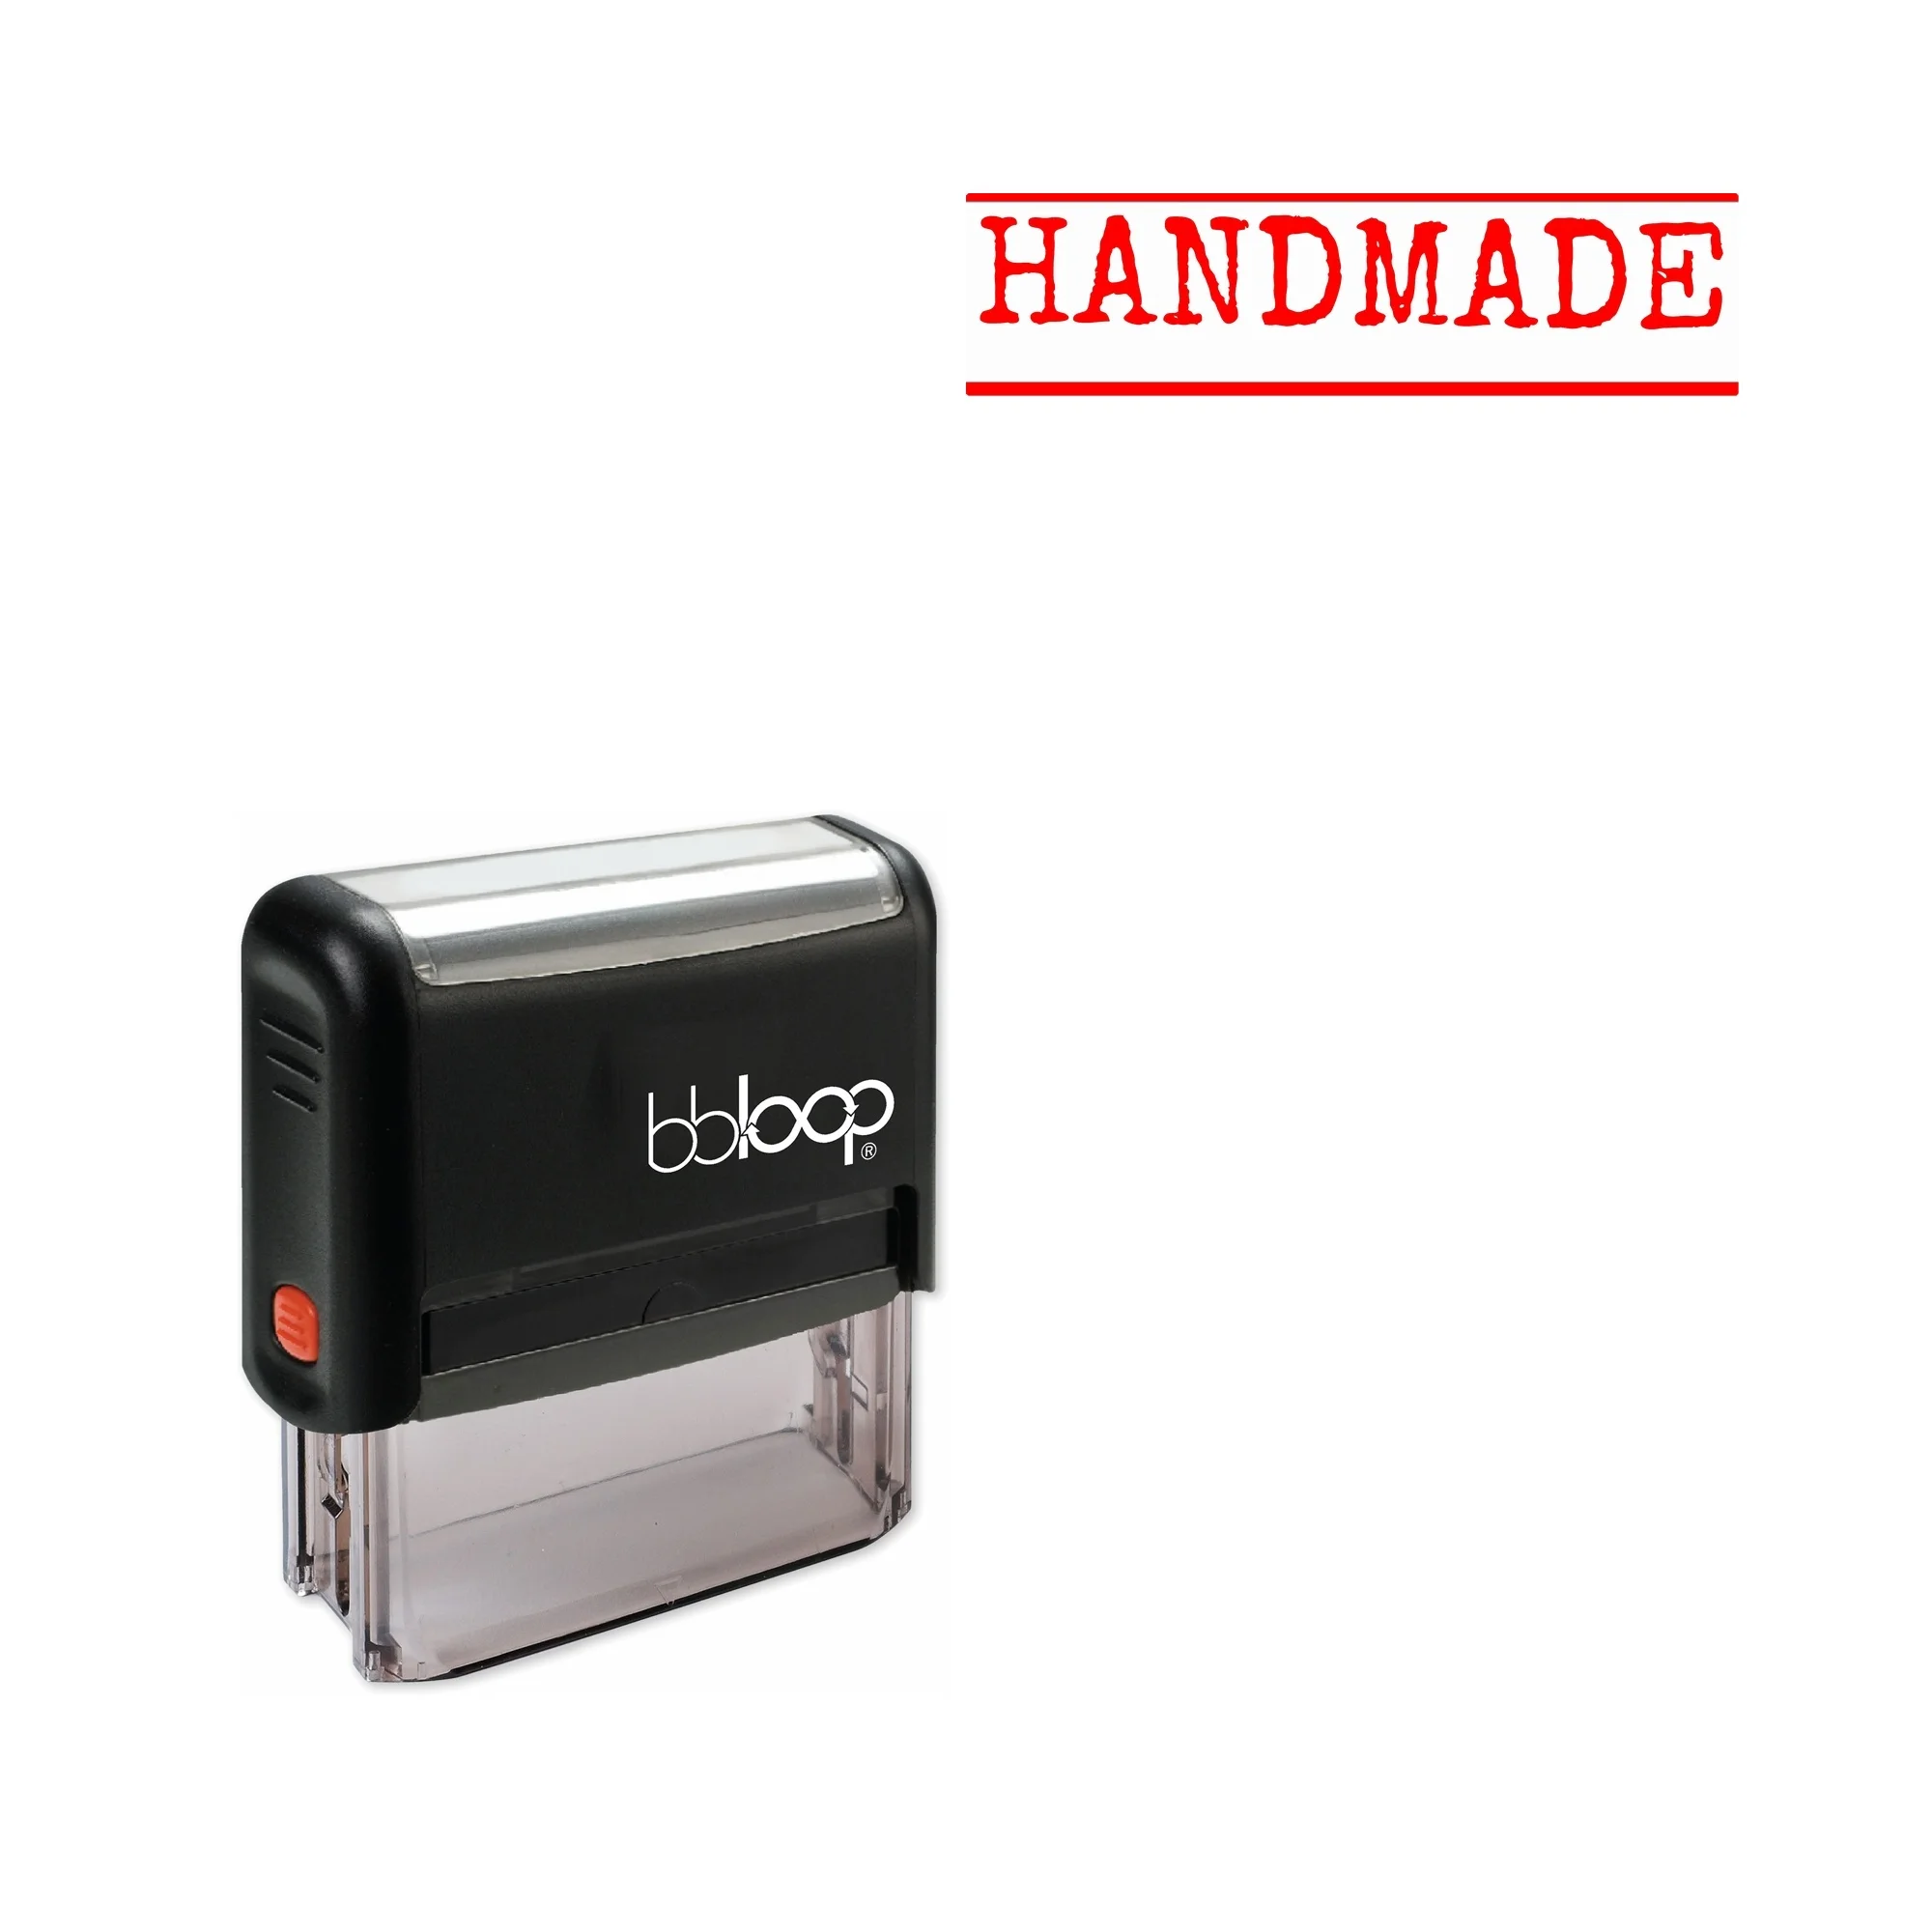 

Bbloop 'HANDMADE' Self-Inking Office Stamp, Rectangular Typewriter Style